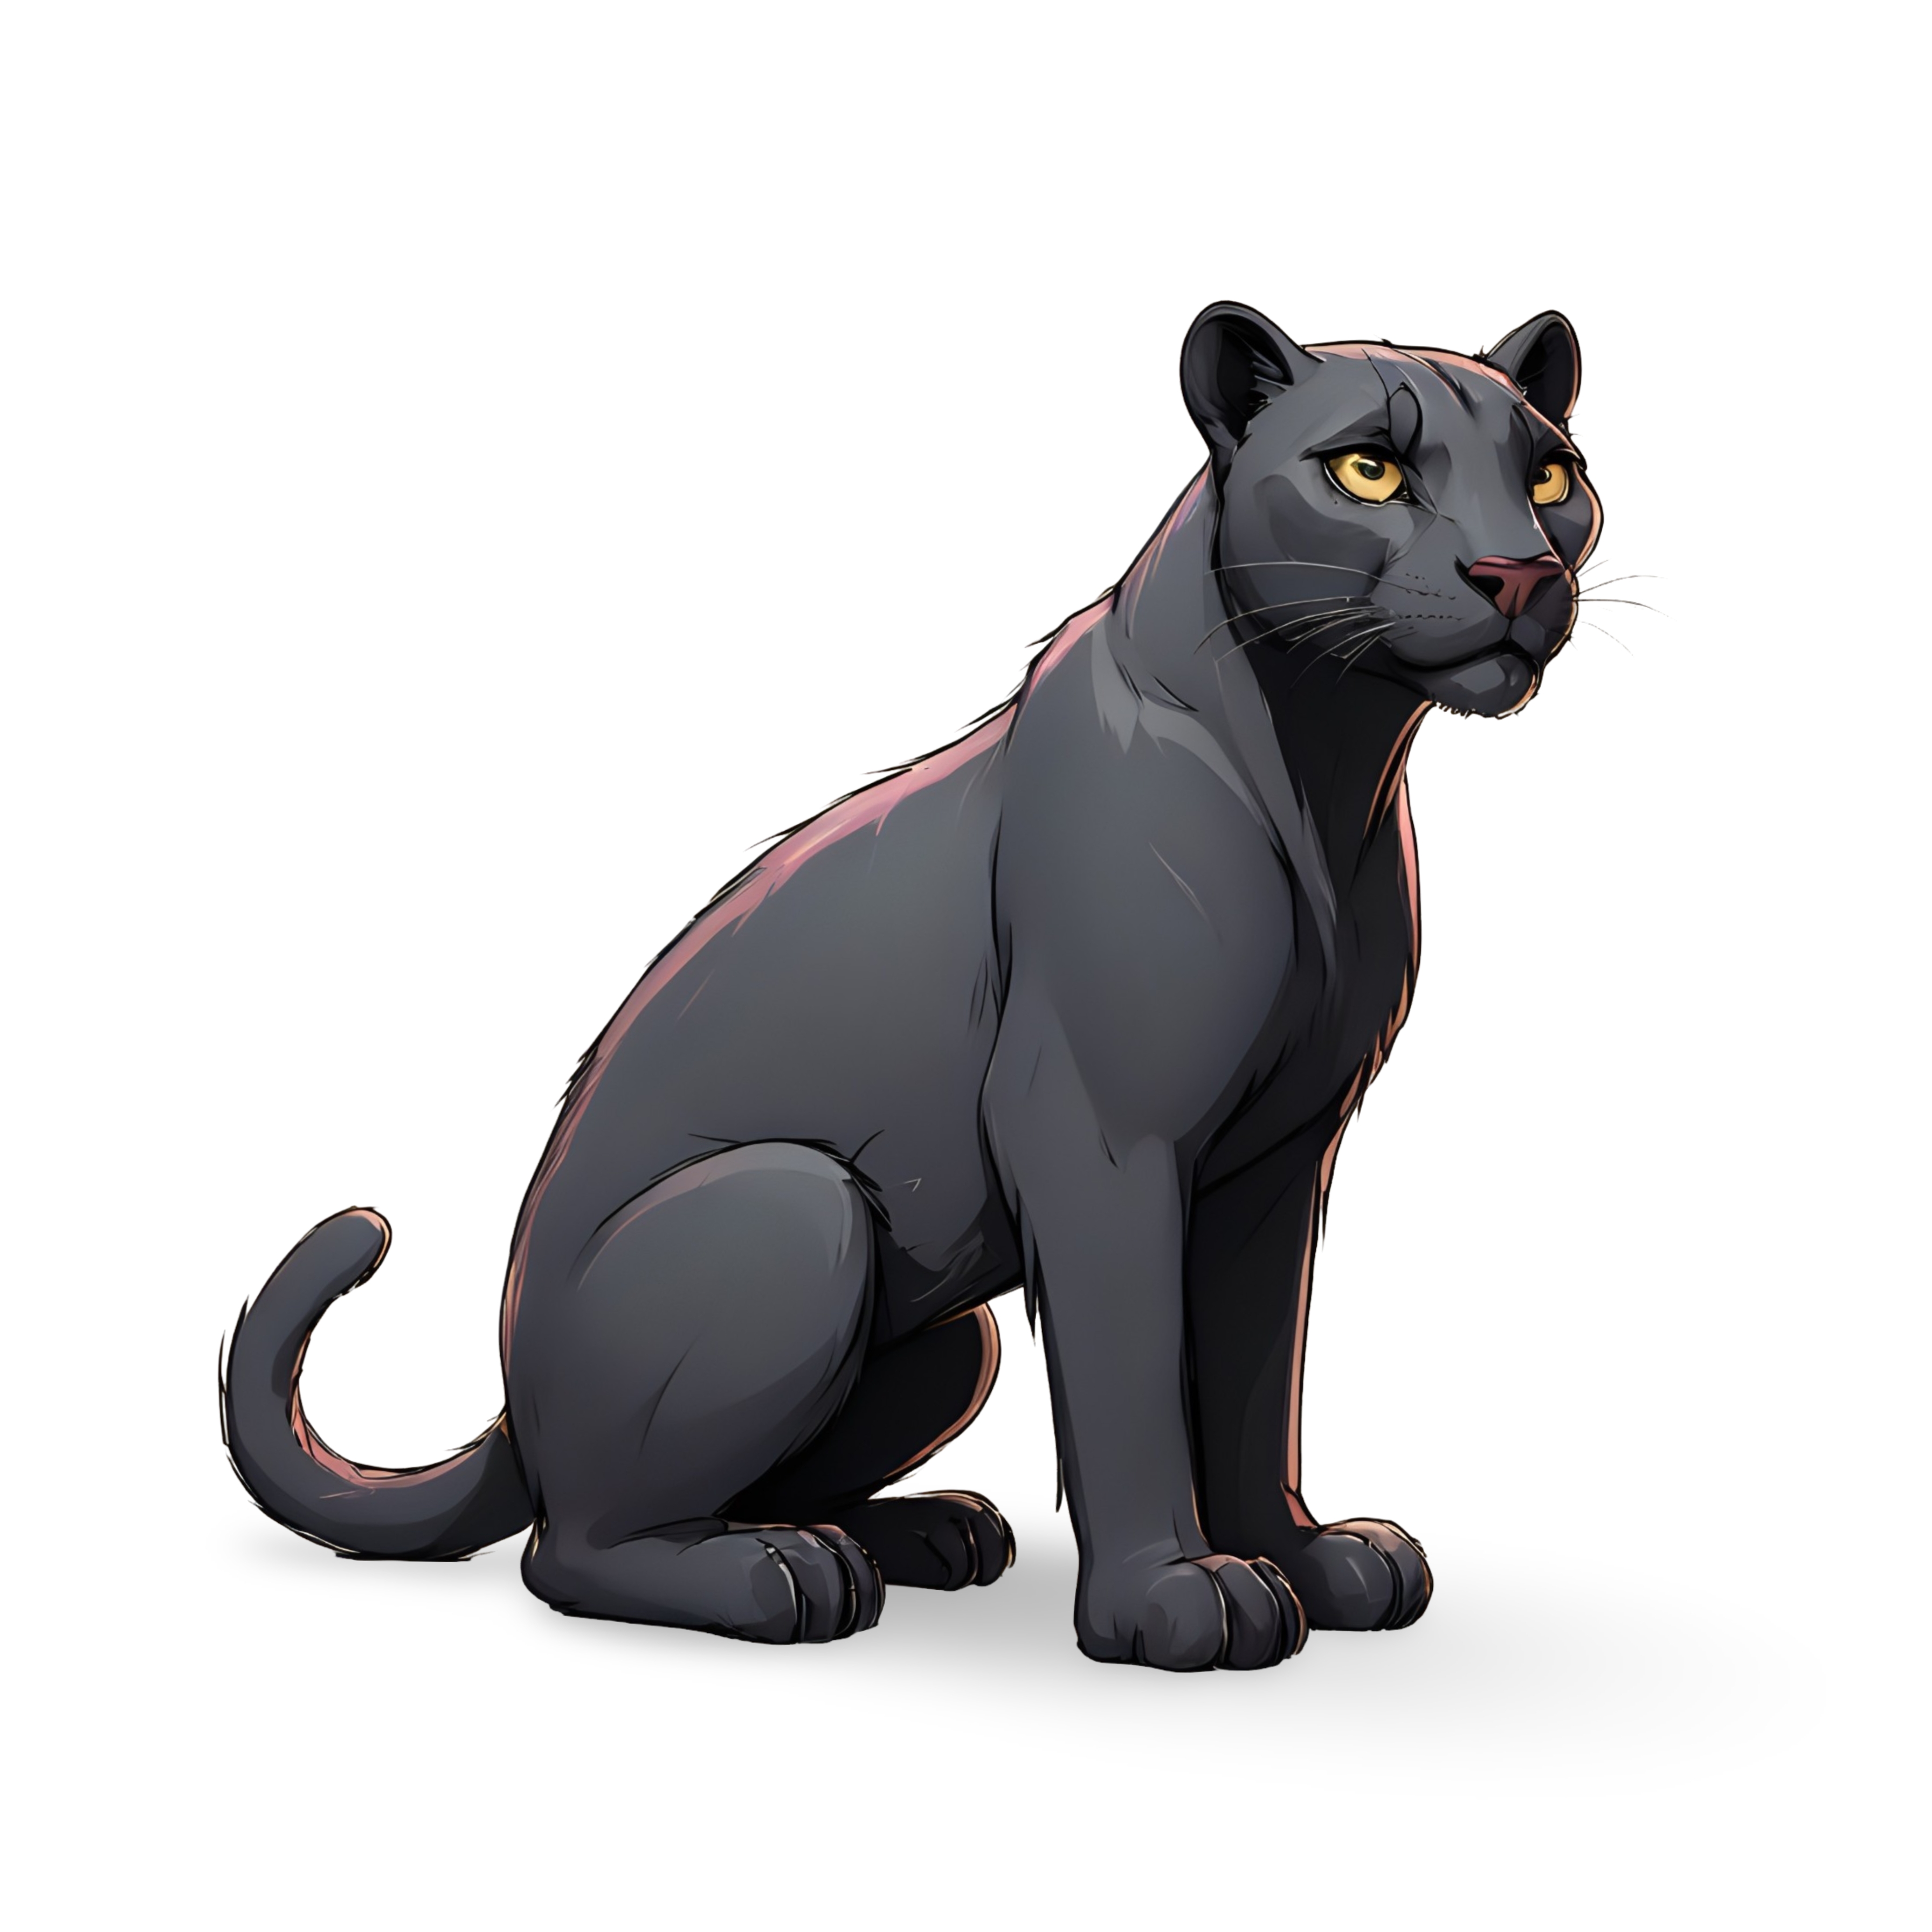 Panther cartoon character